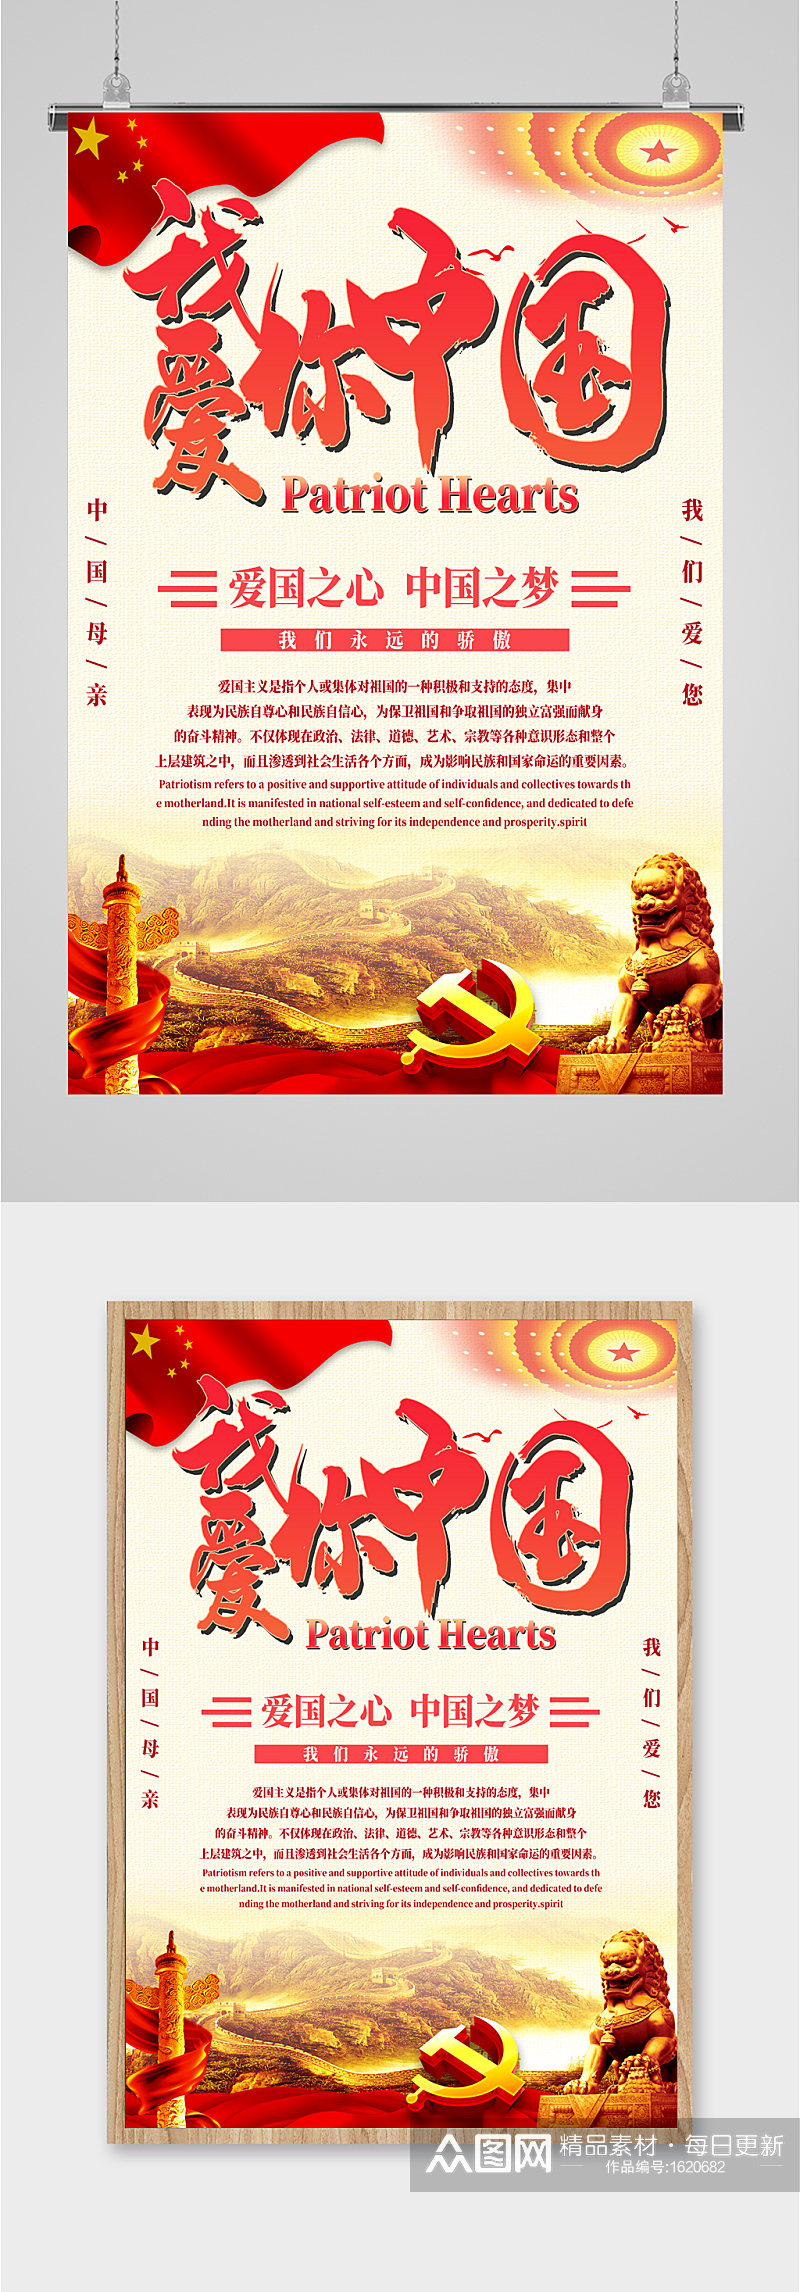 我爱你中国红色海报素材